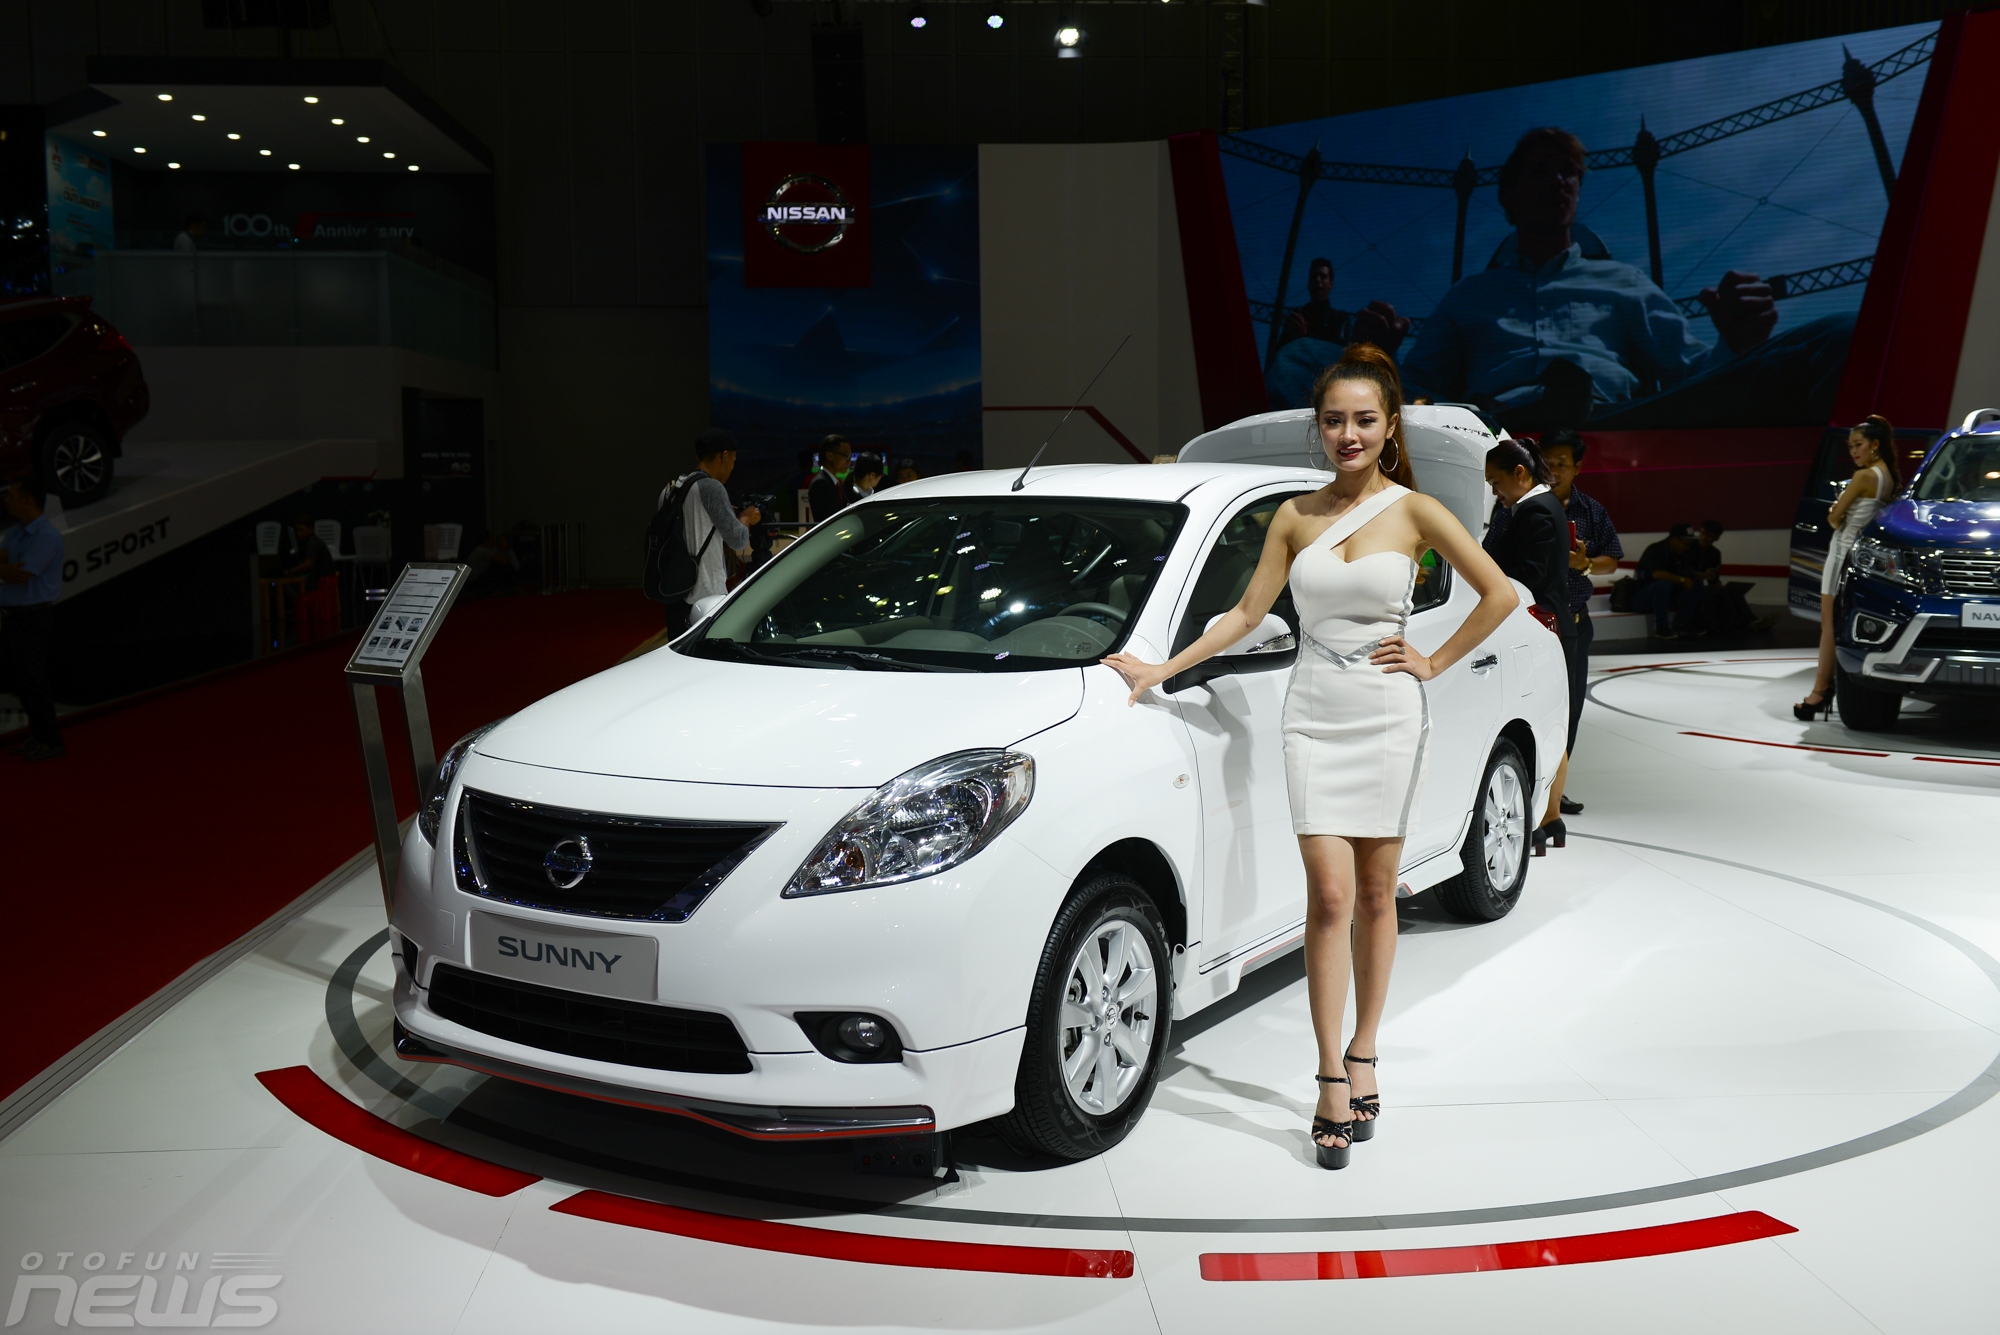 Nissan Sunny hiện là mẫu sedan toàn cầu bán chạy nhất của Nissan